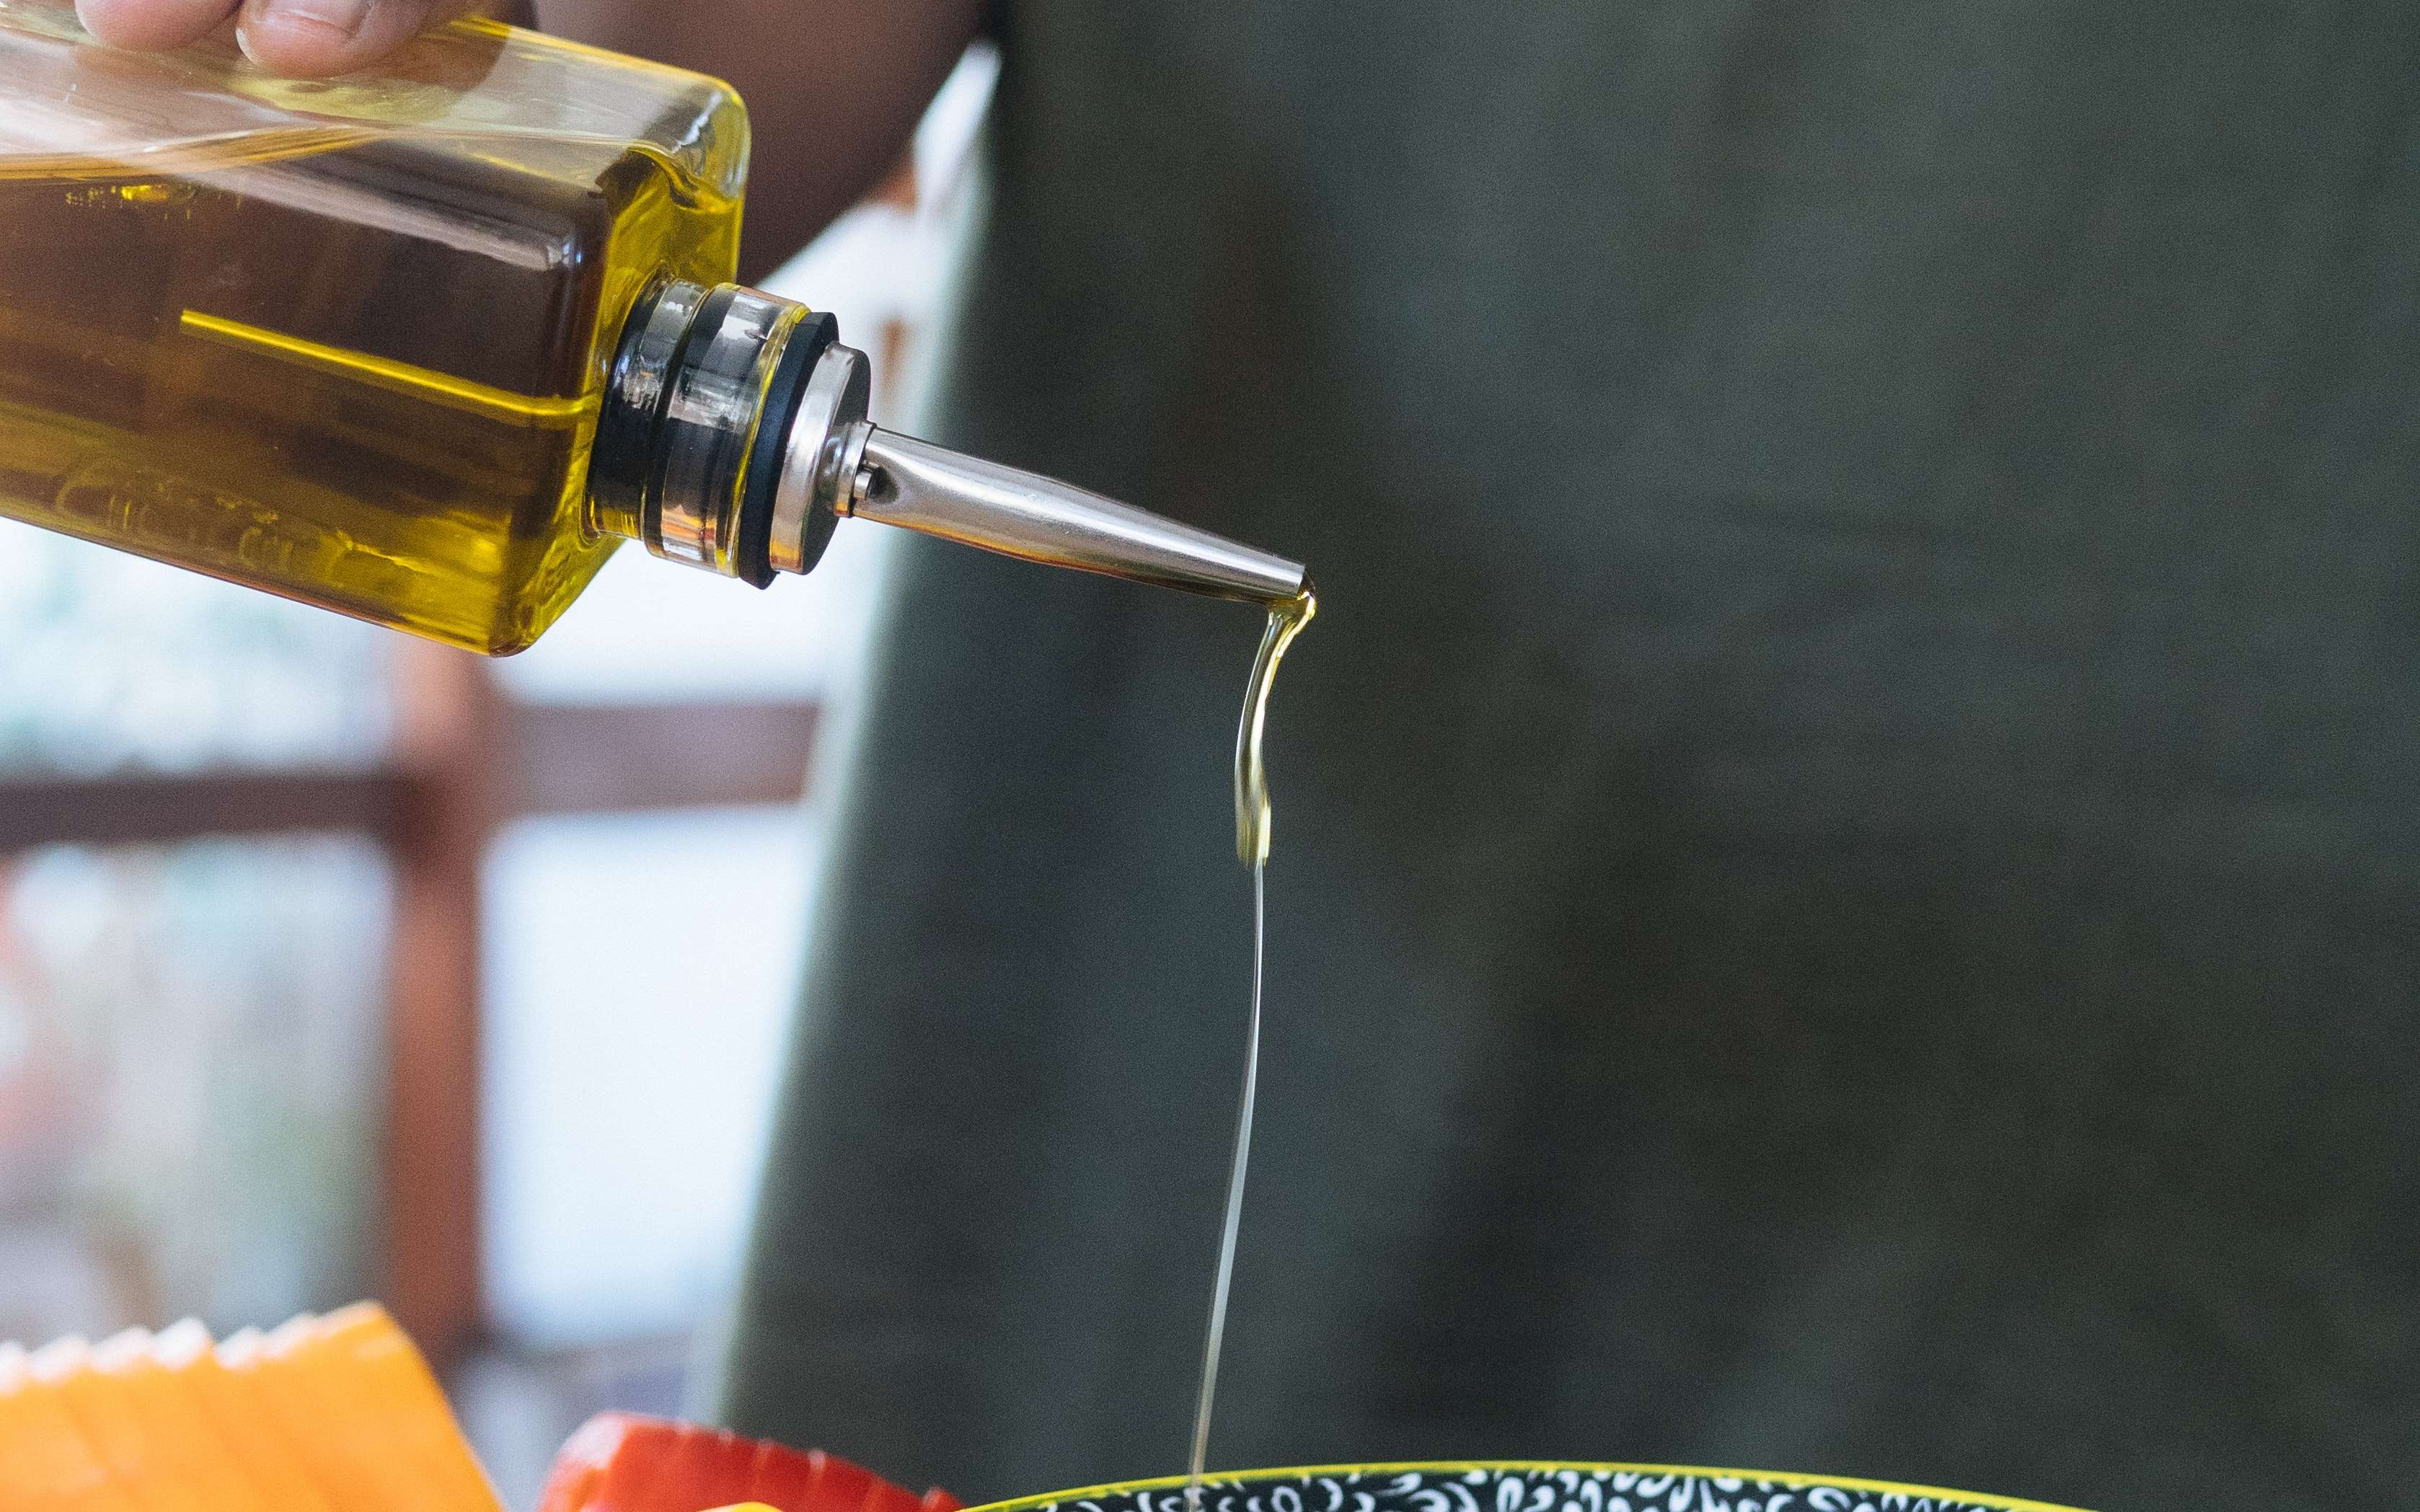 Gourmet Olive Oil Set